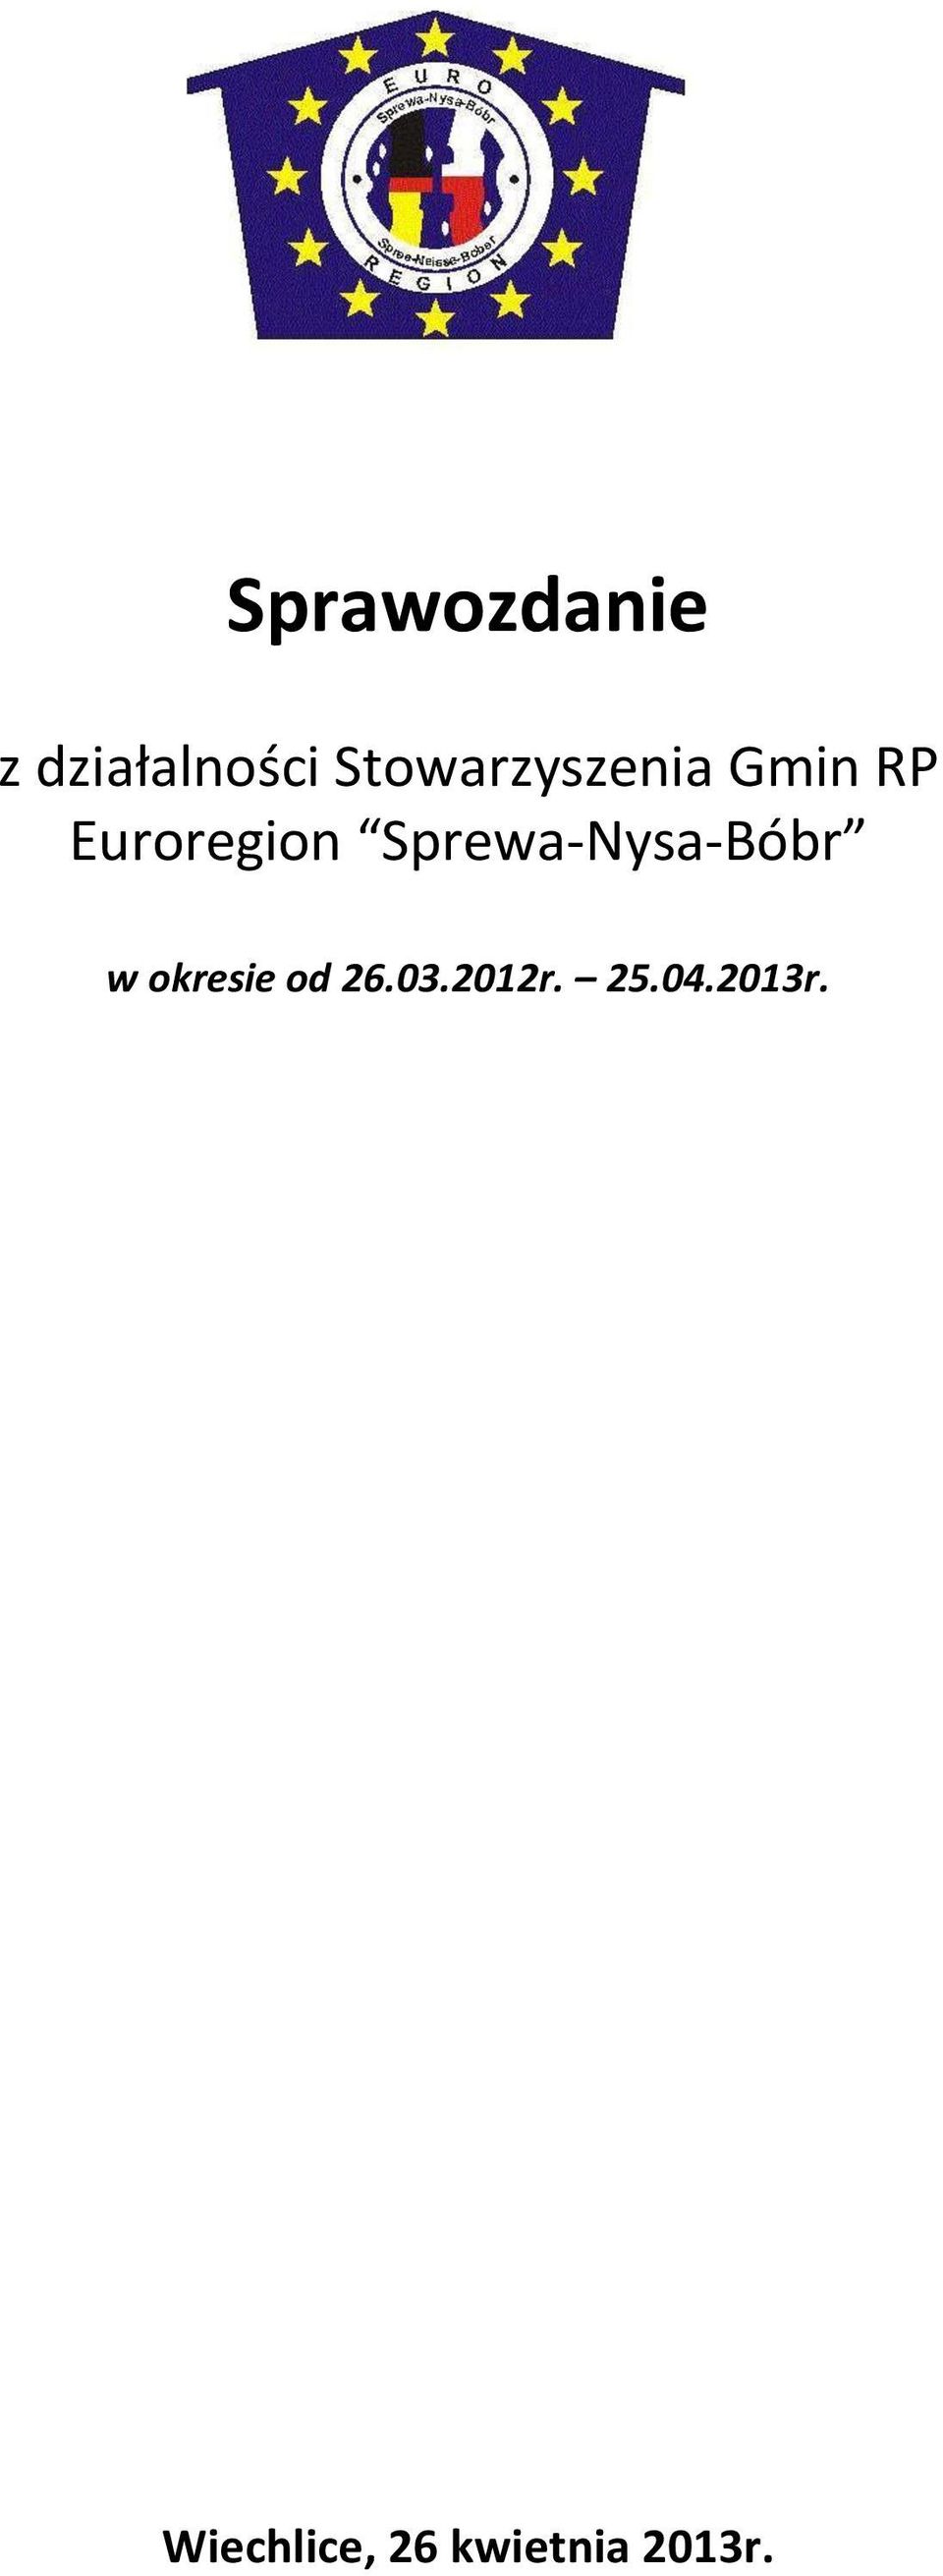 Sprewa-Nysa-Bóbr w okresie od 26.03.